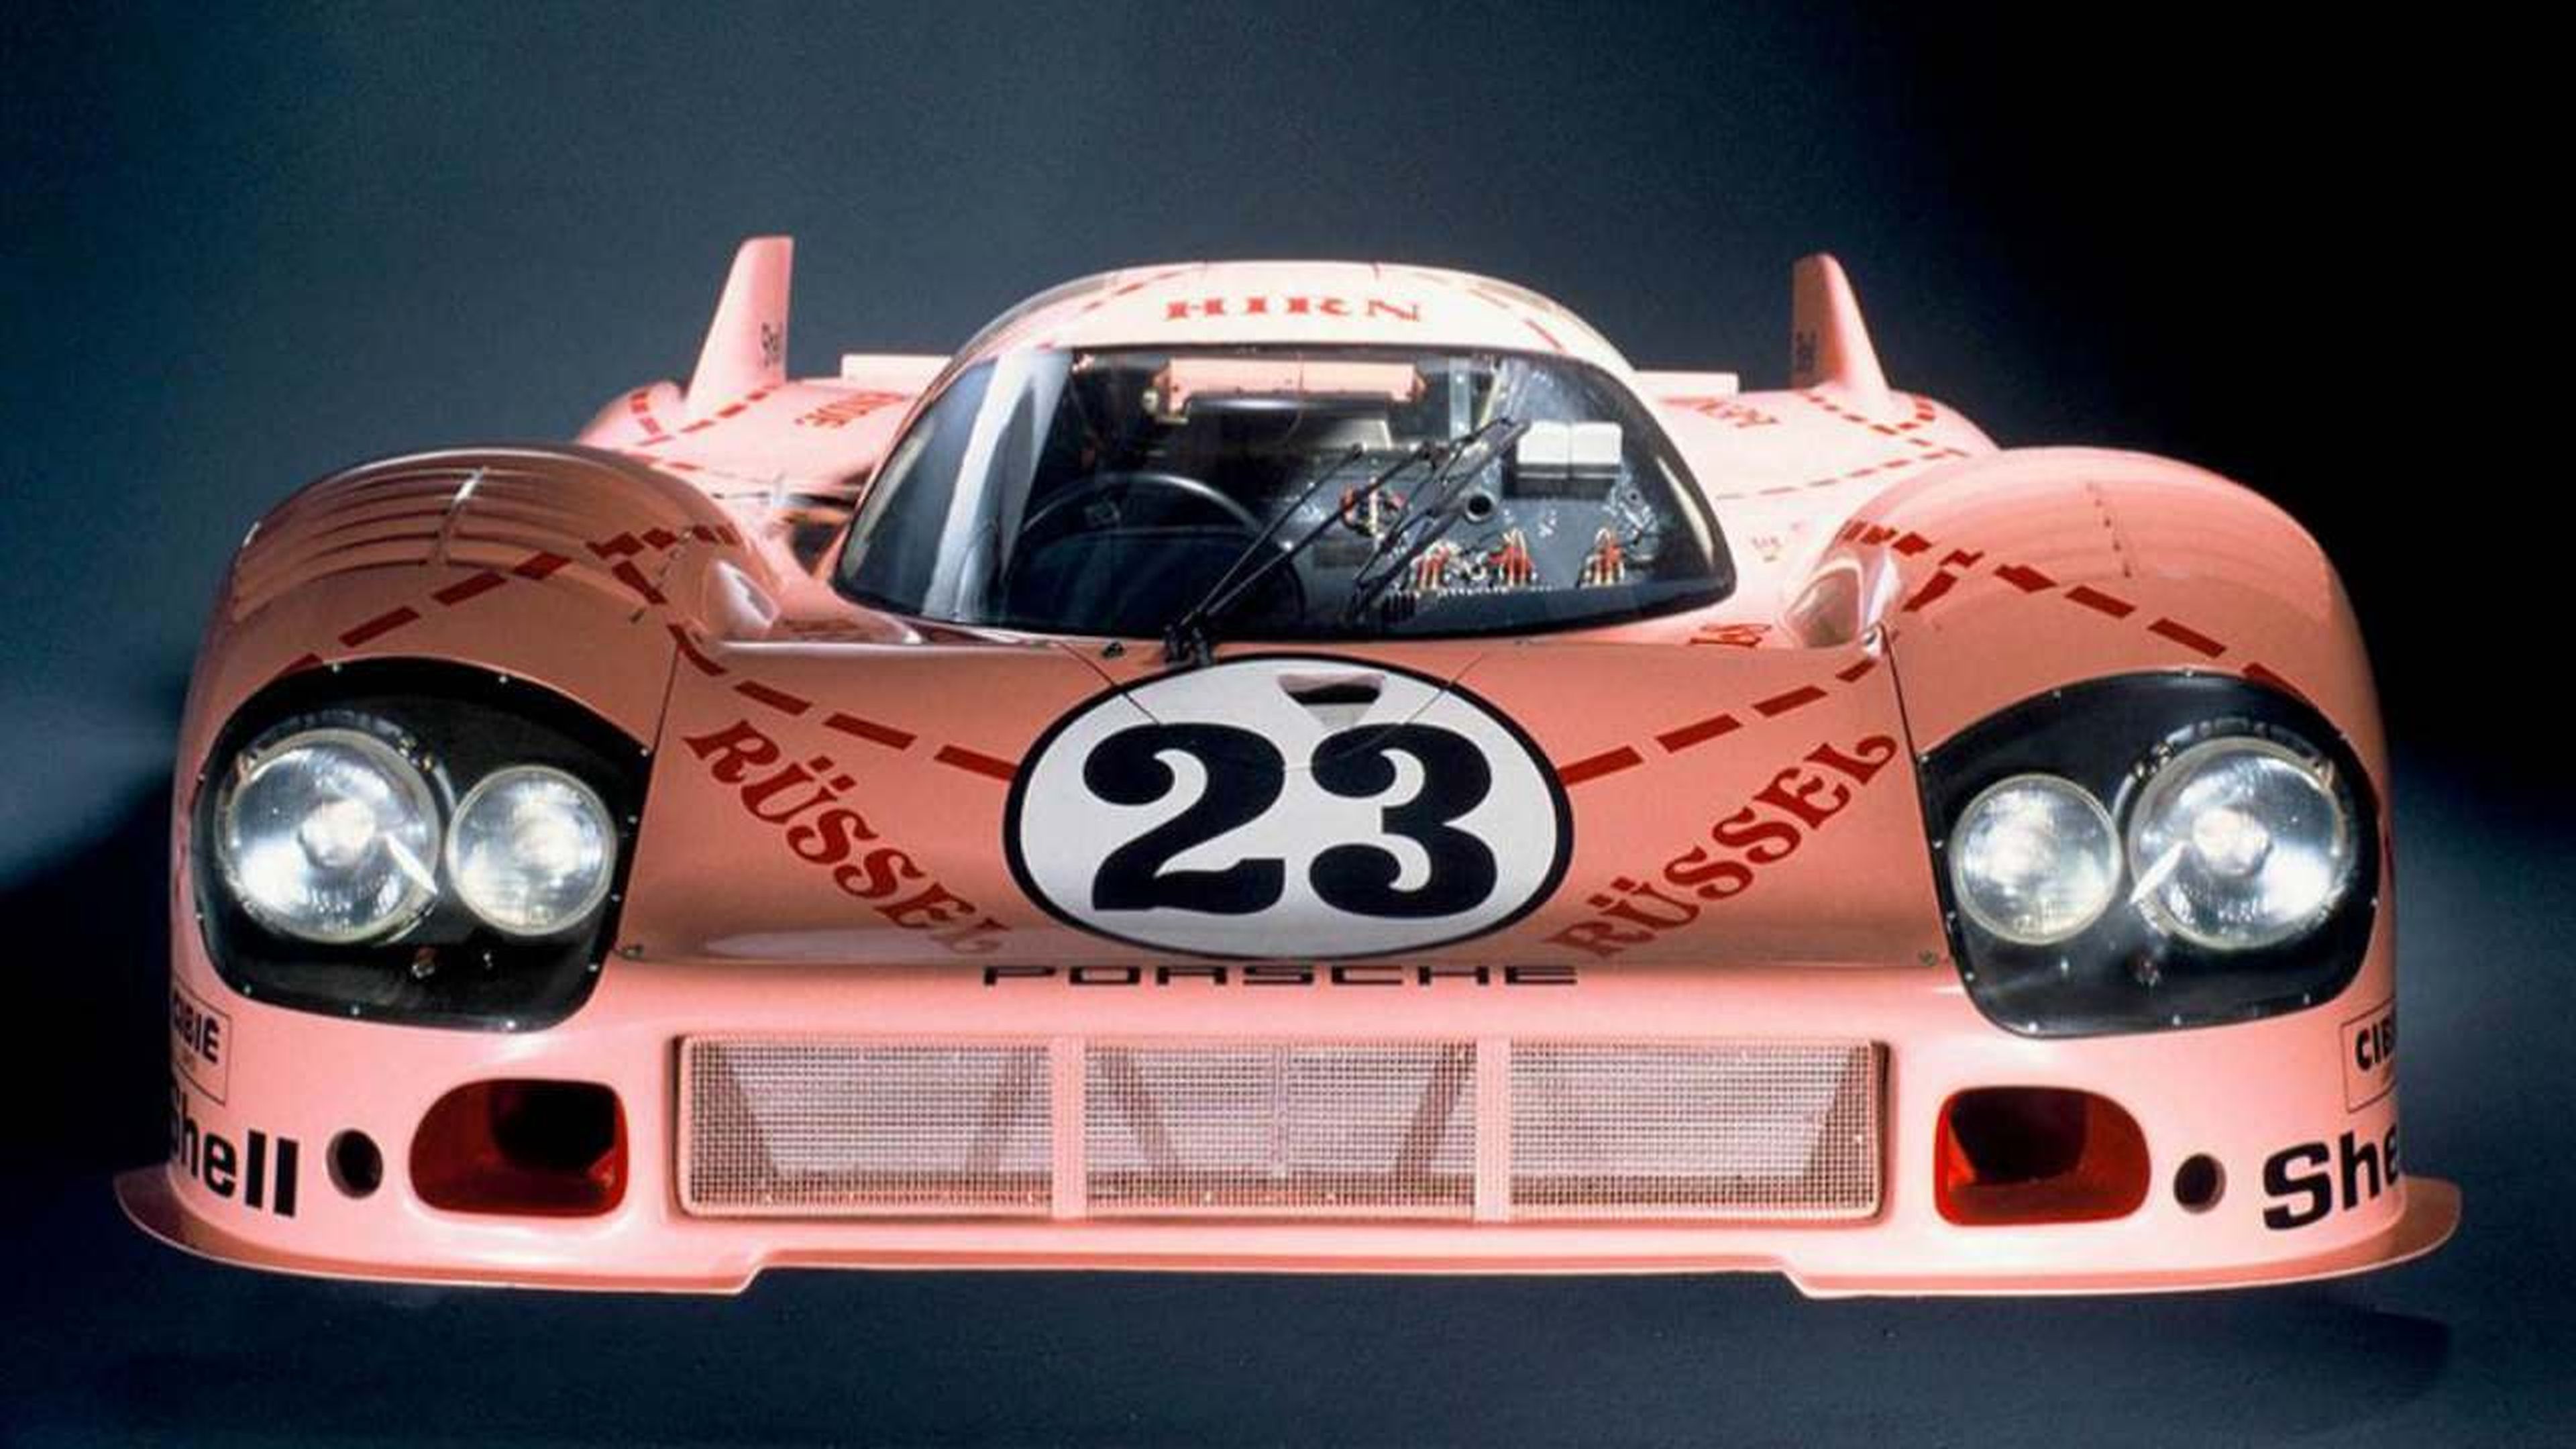 Porsche 917/20